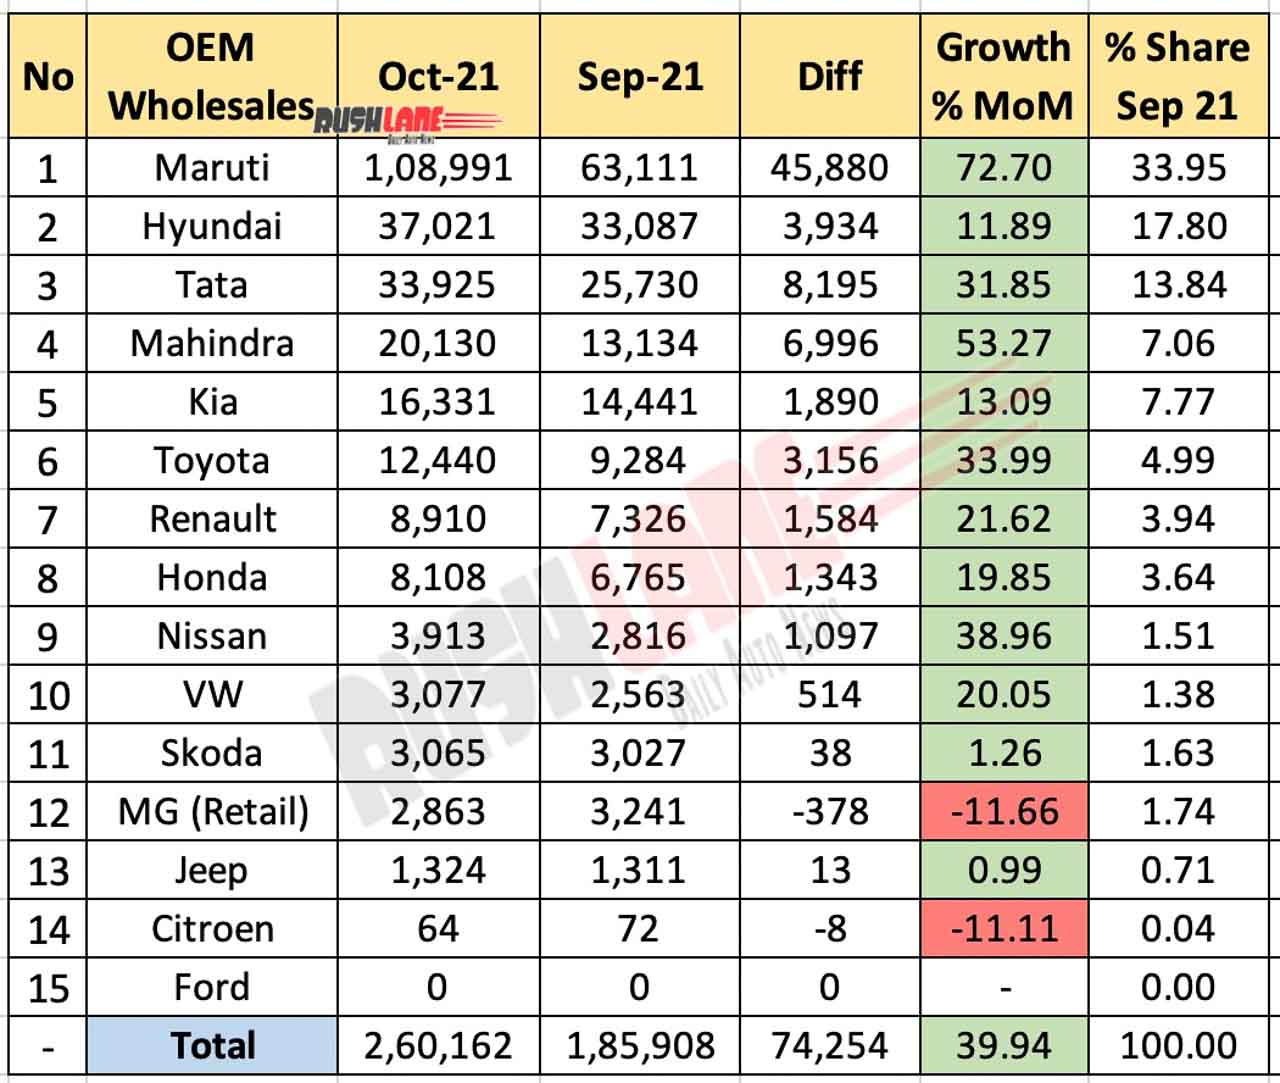 Car Sales Oct 2021 vs Sep 2021 (MoM)